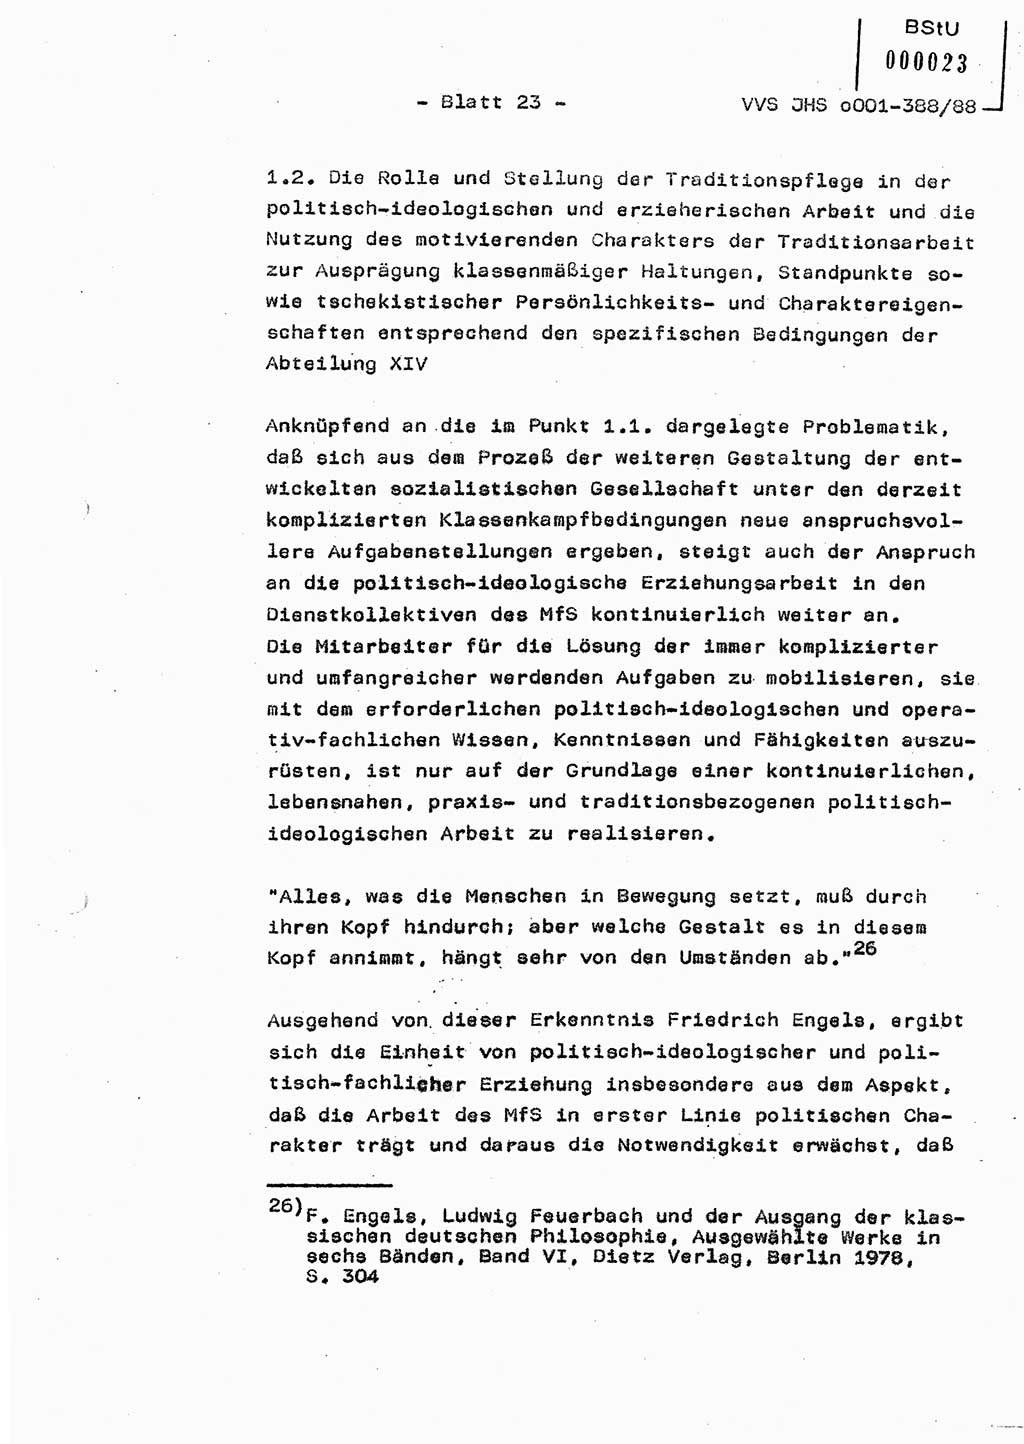 Diplomarbeit Hauptmann Heinz Brixel (Abt. ⅩⅣ), Ministerium für Staatssicherheit (MfS) [Deutsche Demokratische Republik (DDR)], Juristische Hochschule (JHS), Vertrauliche Verschlußsache (VVS) o001-388/88, Potsdam 1988, Blatt 23 (Dipl.-Arb. MfS DDR JHS VVS o001-388/88 1988, Bl. 23)